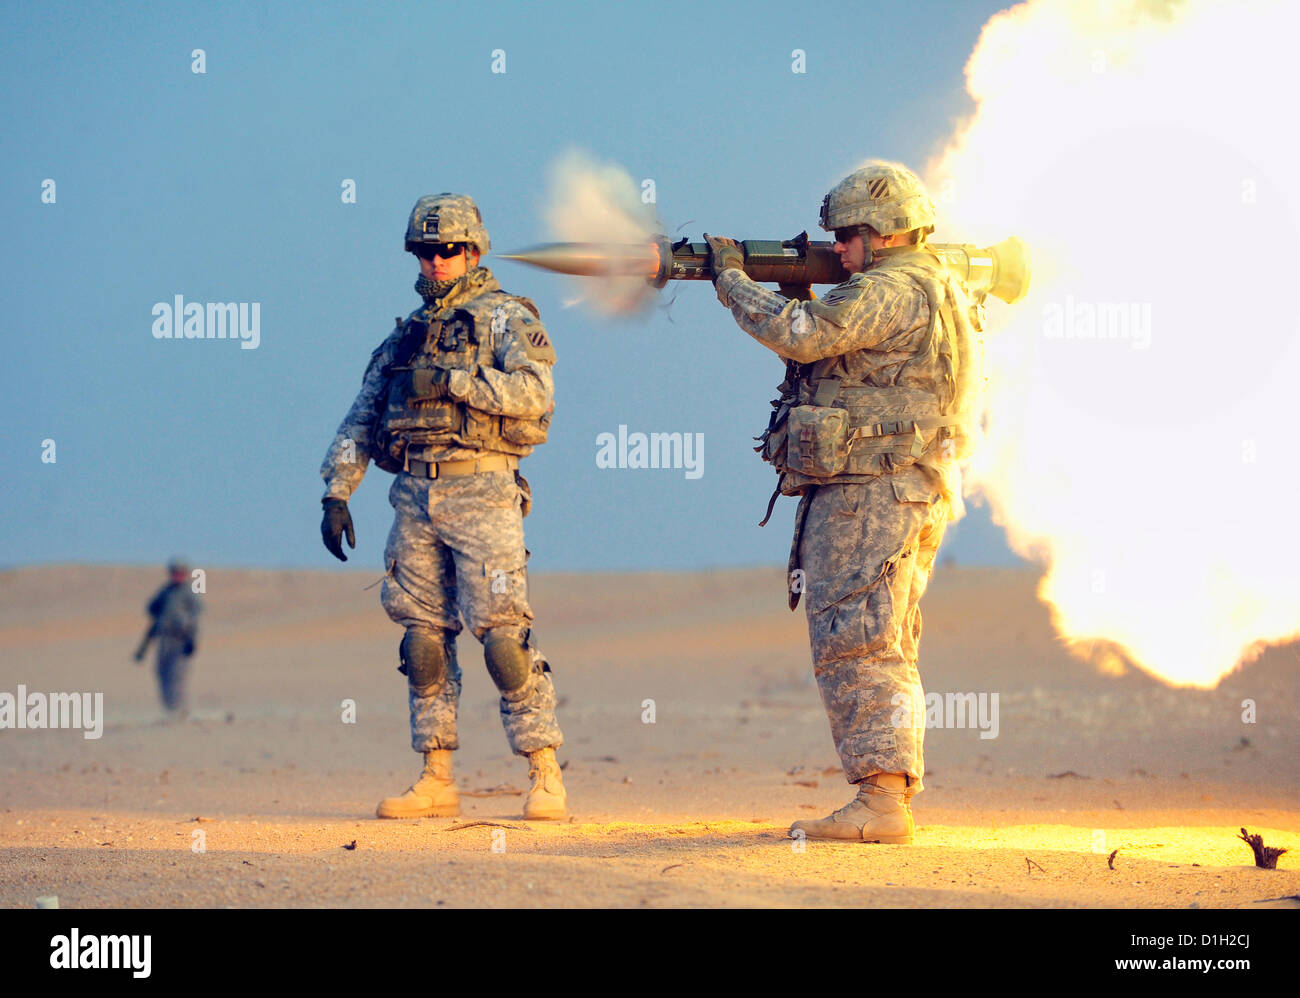 Un soldat de l'armée américaine une antichar AT-4 arme pendant la formation à l'Udairi complexe gamme le 20 décembre 2012 près du Camp Buehring, le Koweït. À l-4 est un appareil portable, les canons sans recul arme destinée à détruire massivement les véhicules blindés. Banque D'Images